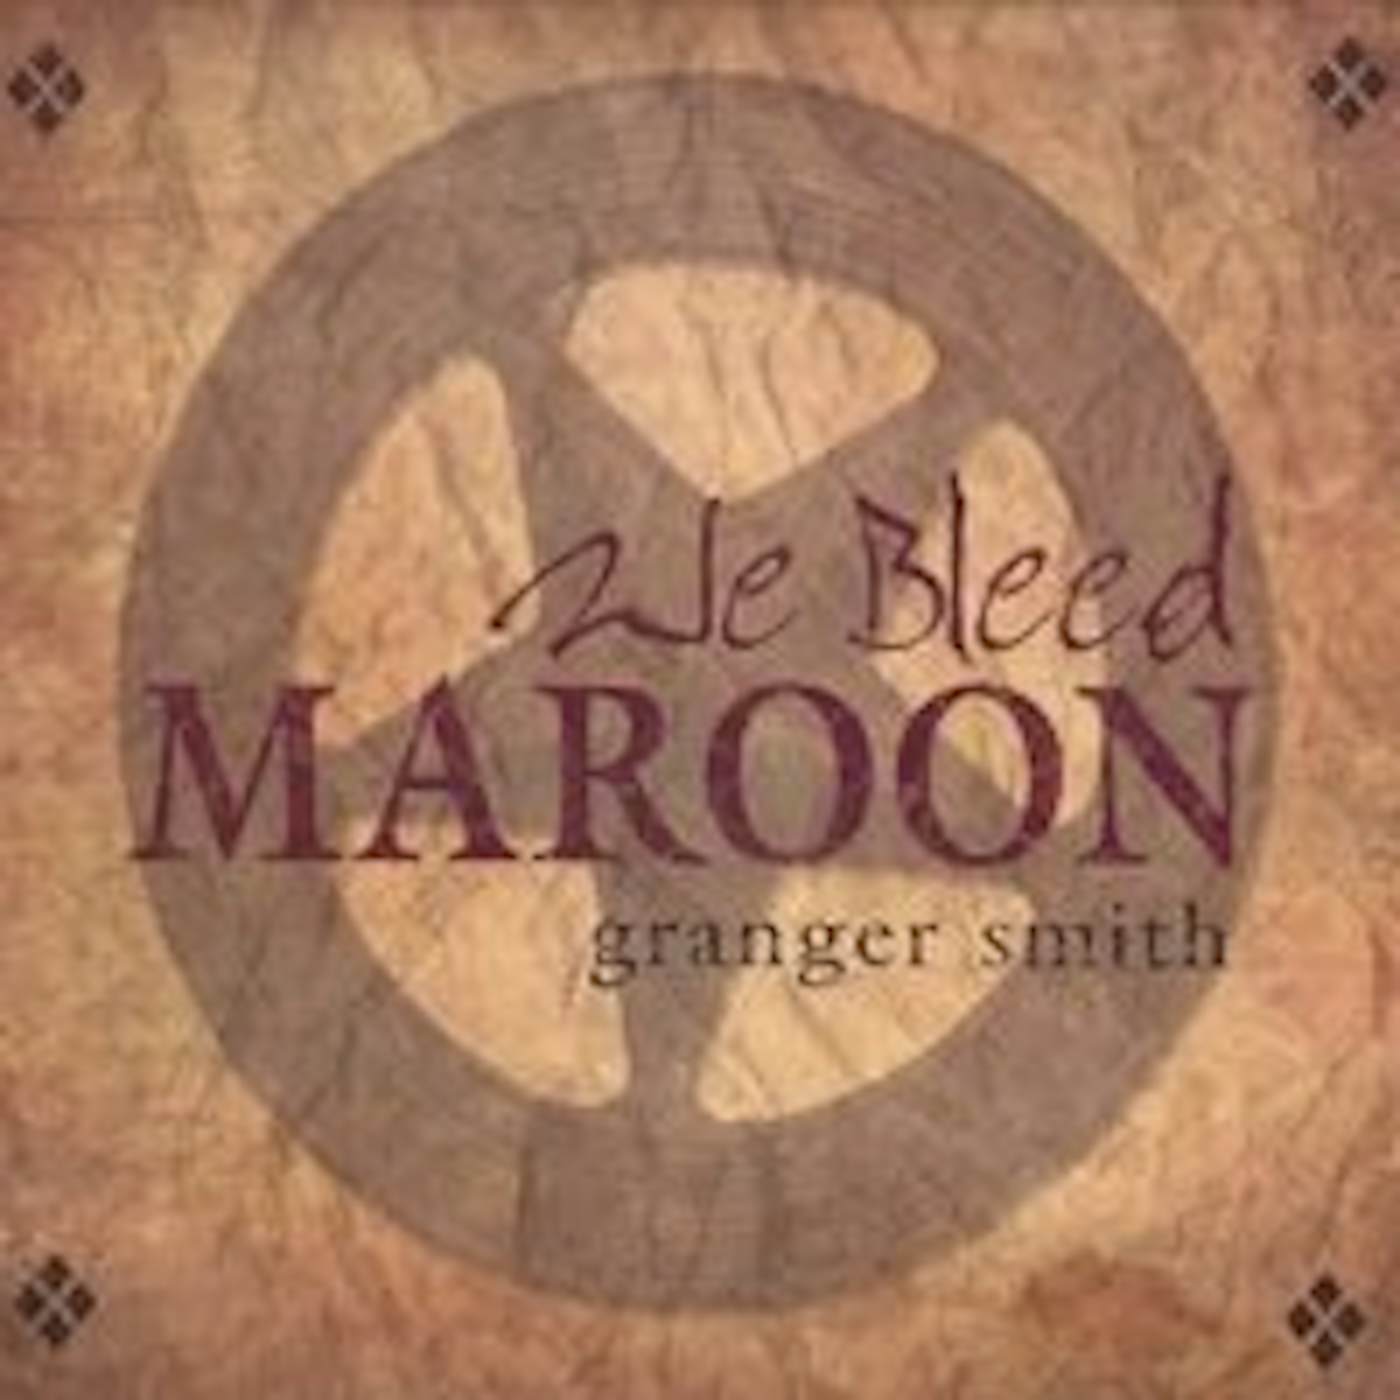 Granger Smith WE BLEED MAROON CD